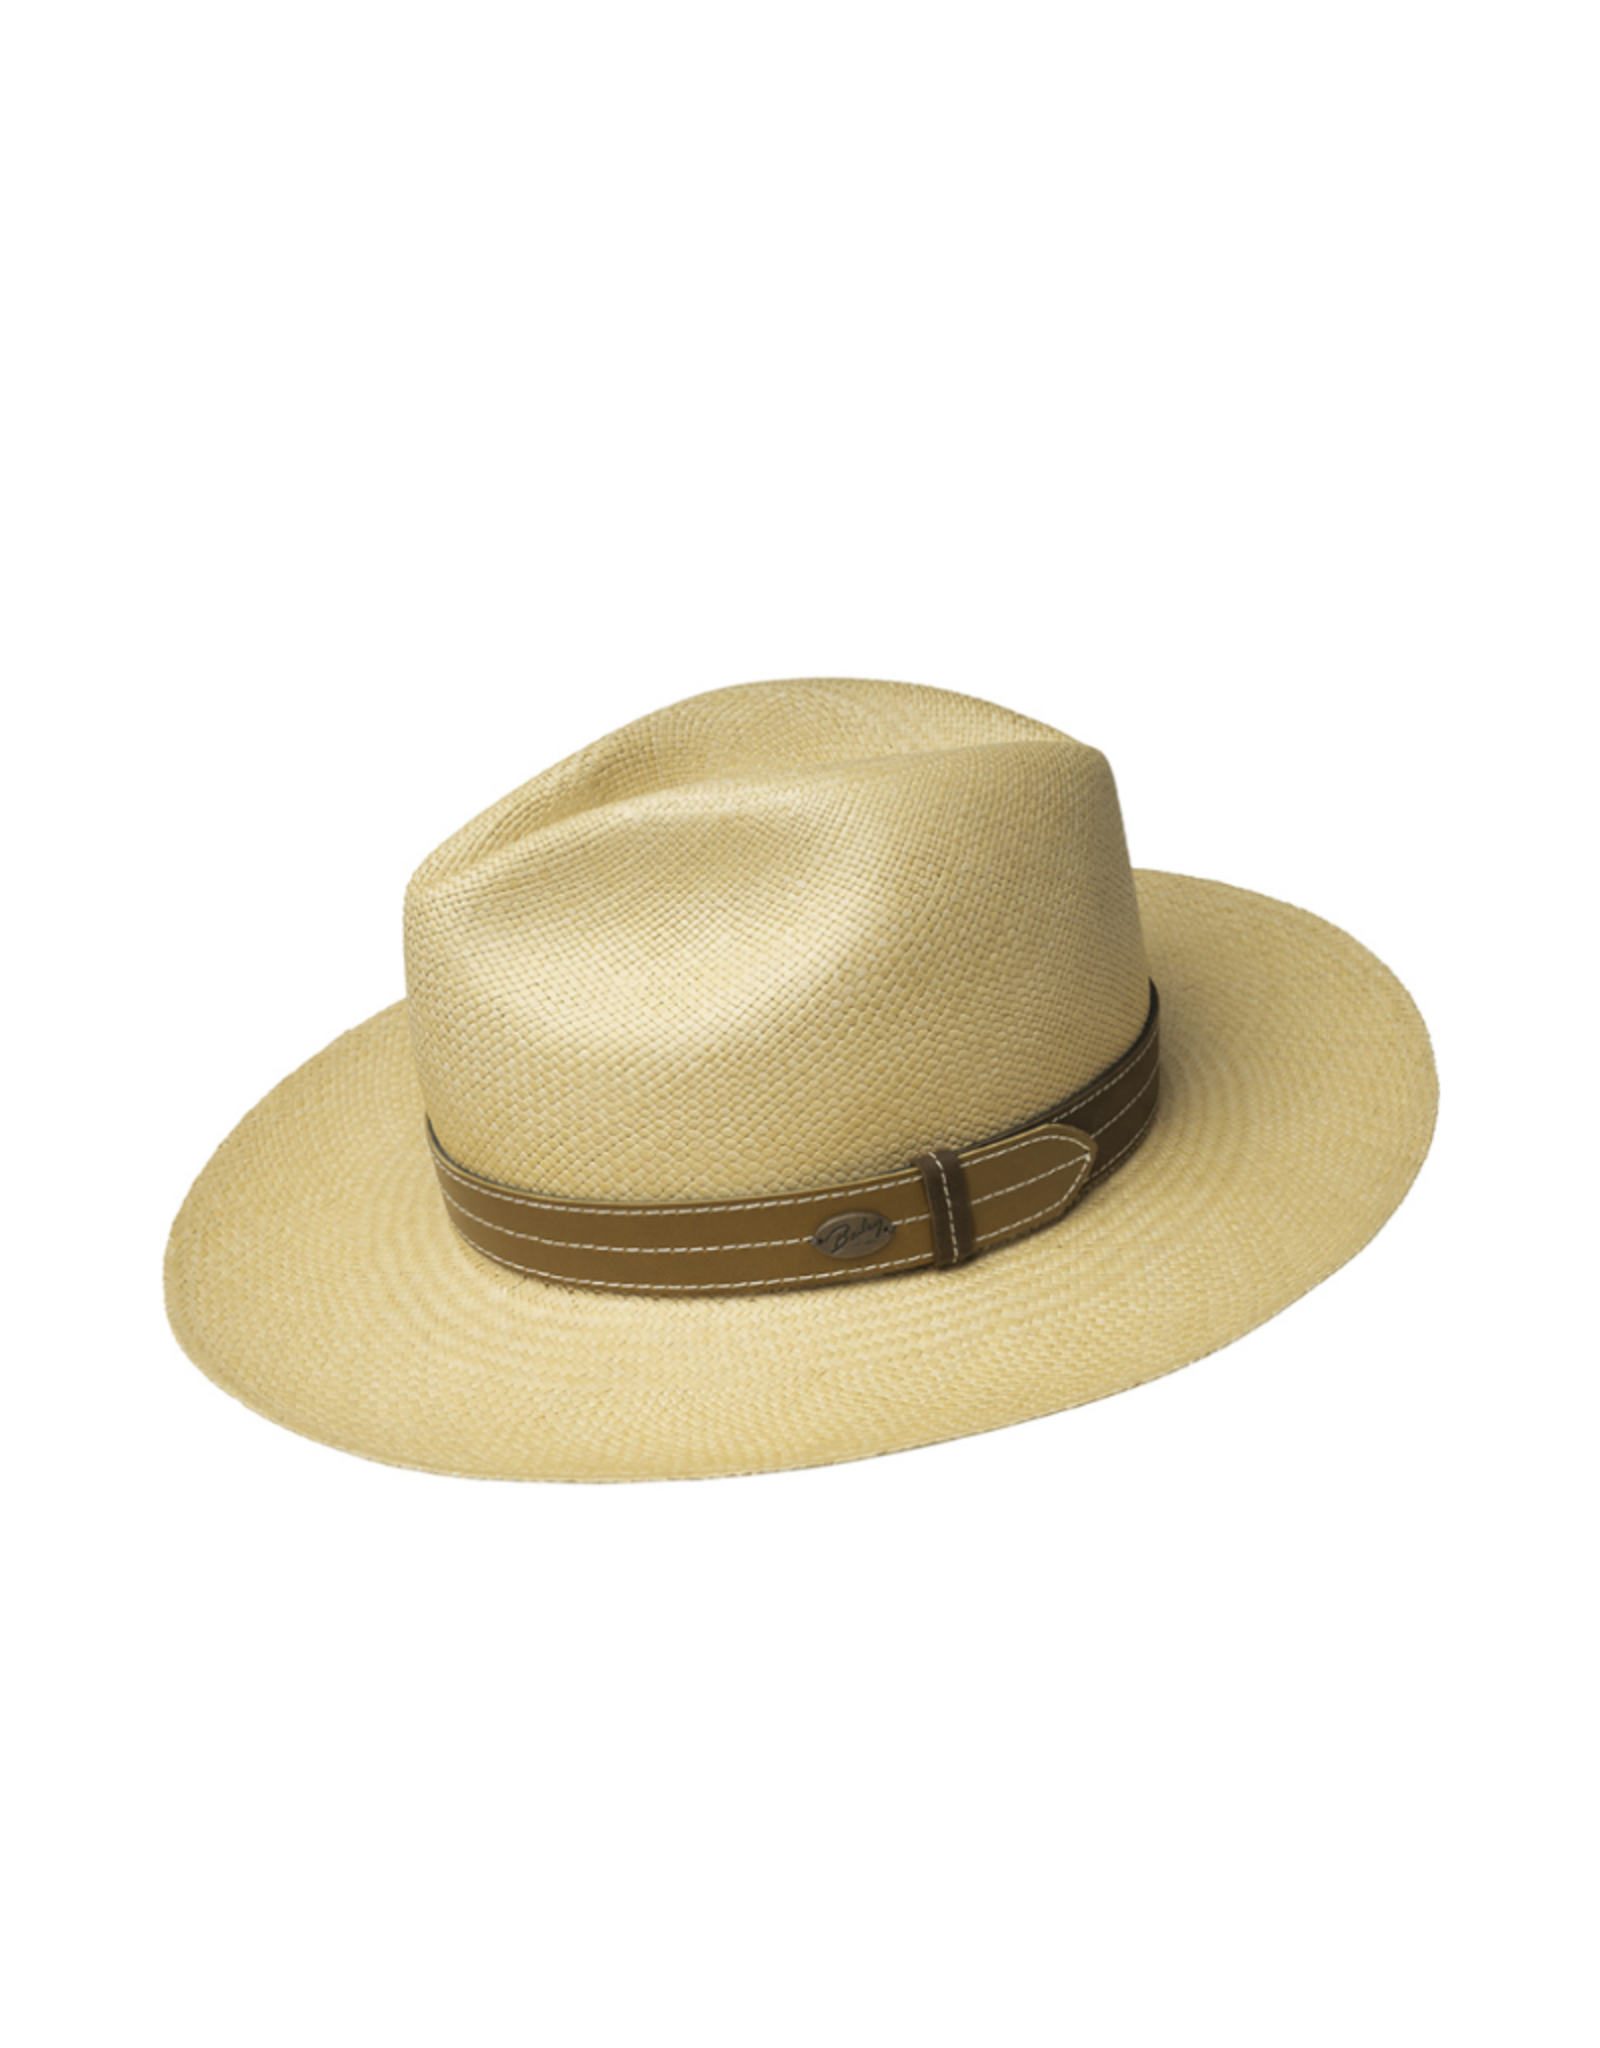 Bailey Hat Co. HAT-WESTERN "GUNNAR" W/LEATHER BAND